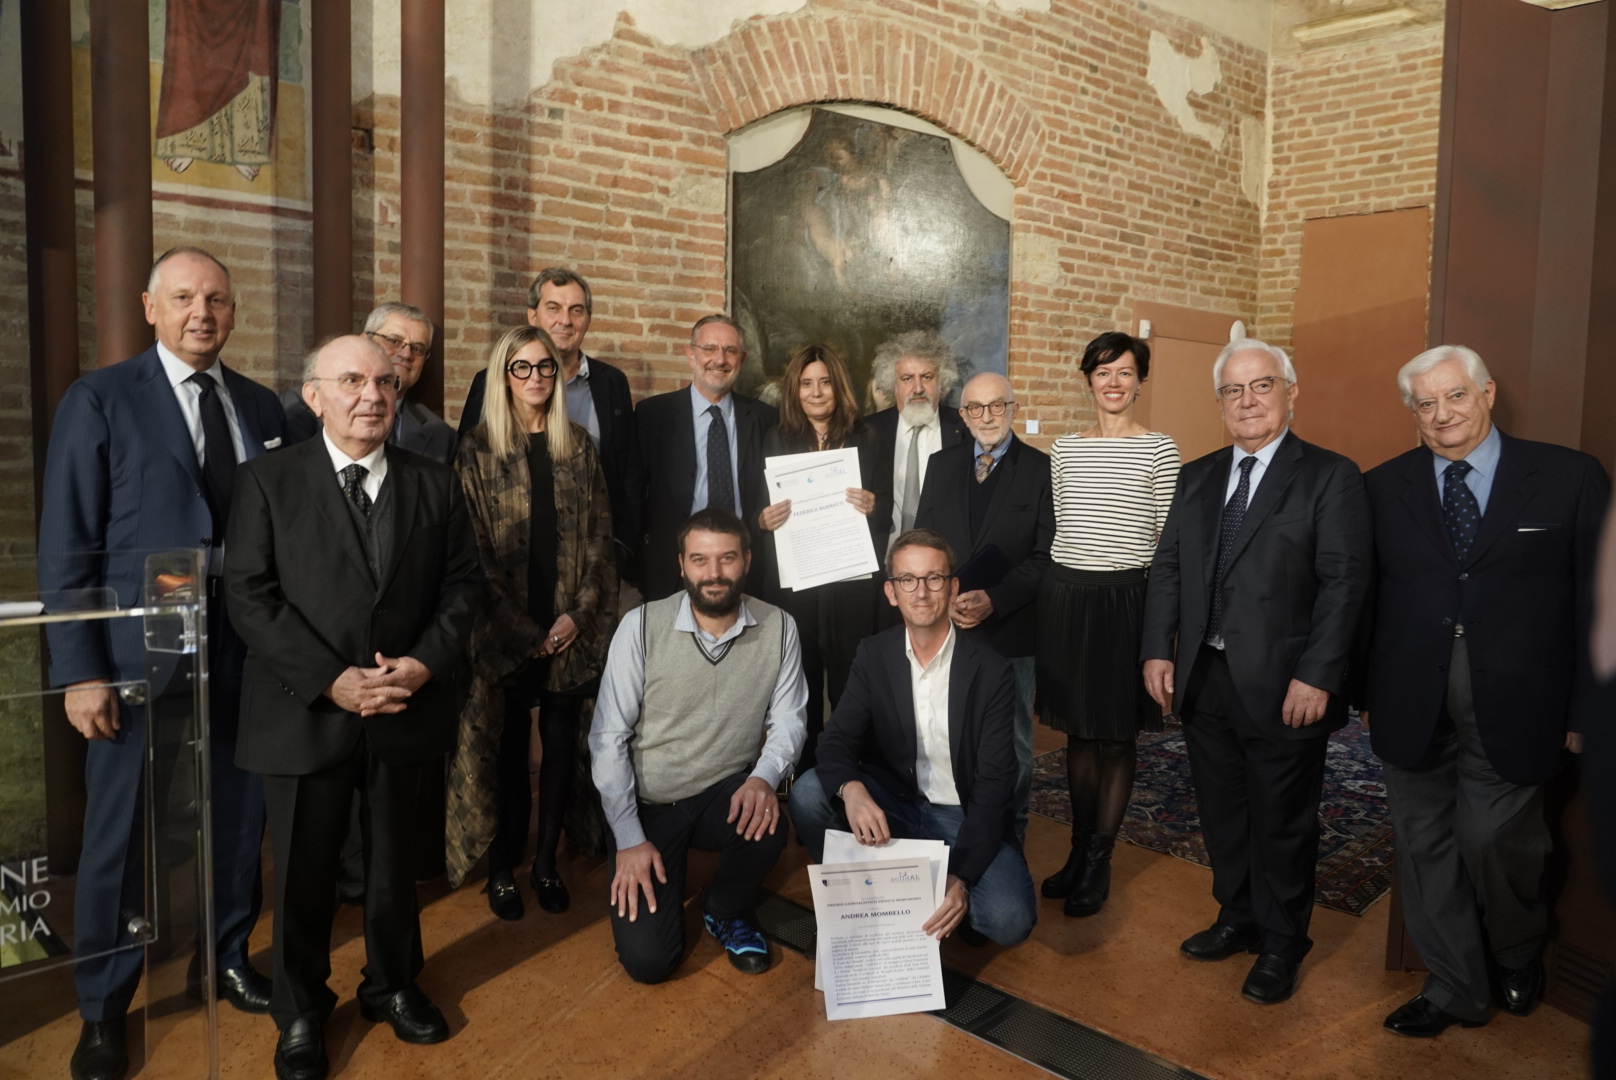 Premio giornalistico “Franco Marchiaro”, ad Alessandria premiati i vincitori dell’ottava edizione